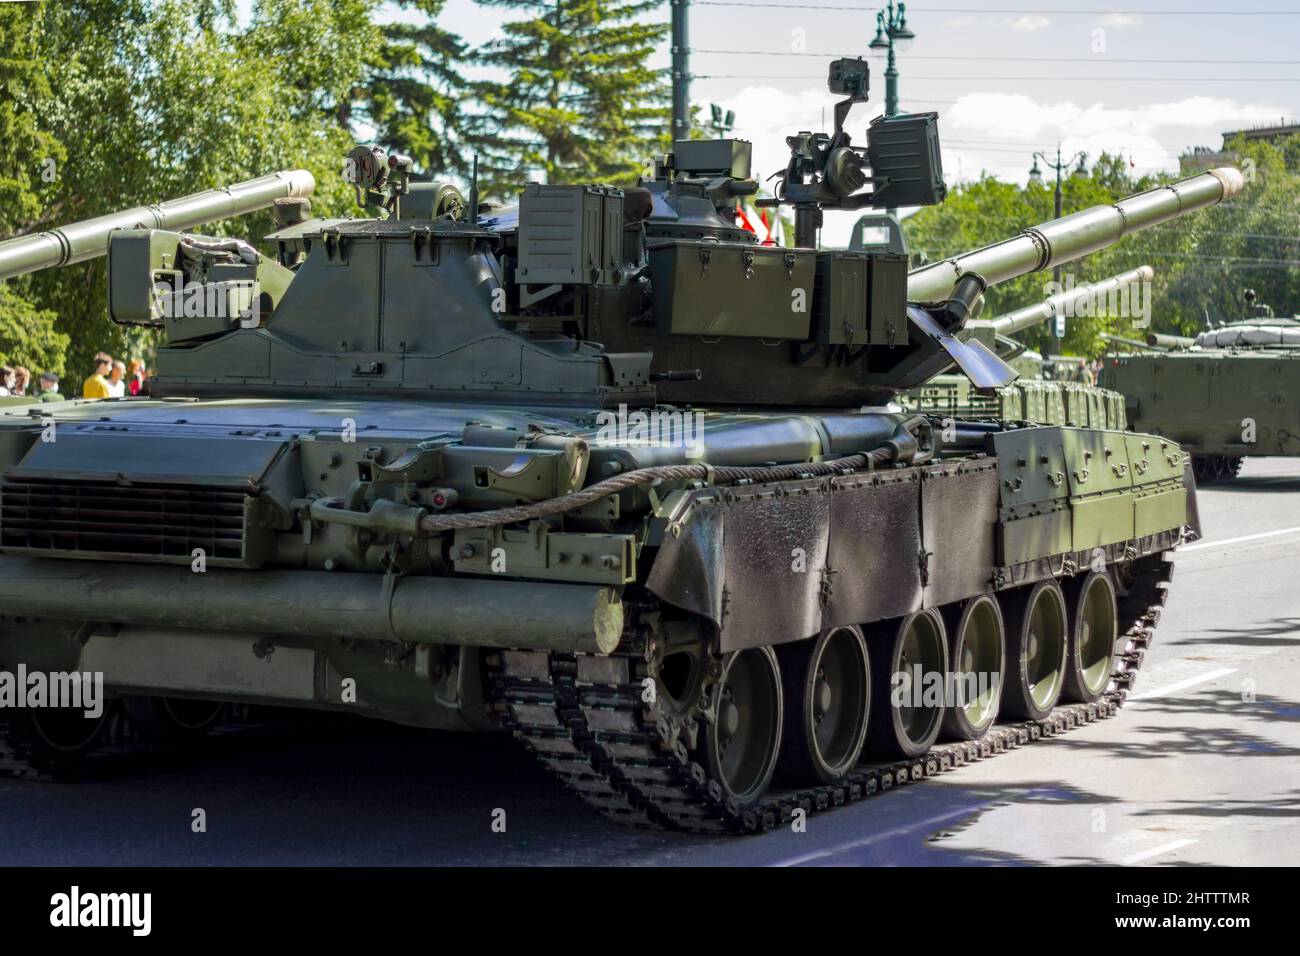 Russische Militärfahrzeuge auf der Straße der Stadt. Russische moderne militärische Panzer und Infanterie Kampffahrzeug BMP. Stockfoto